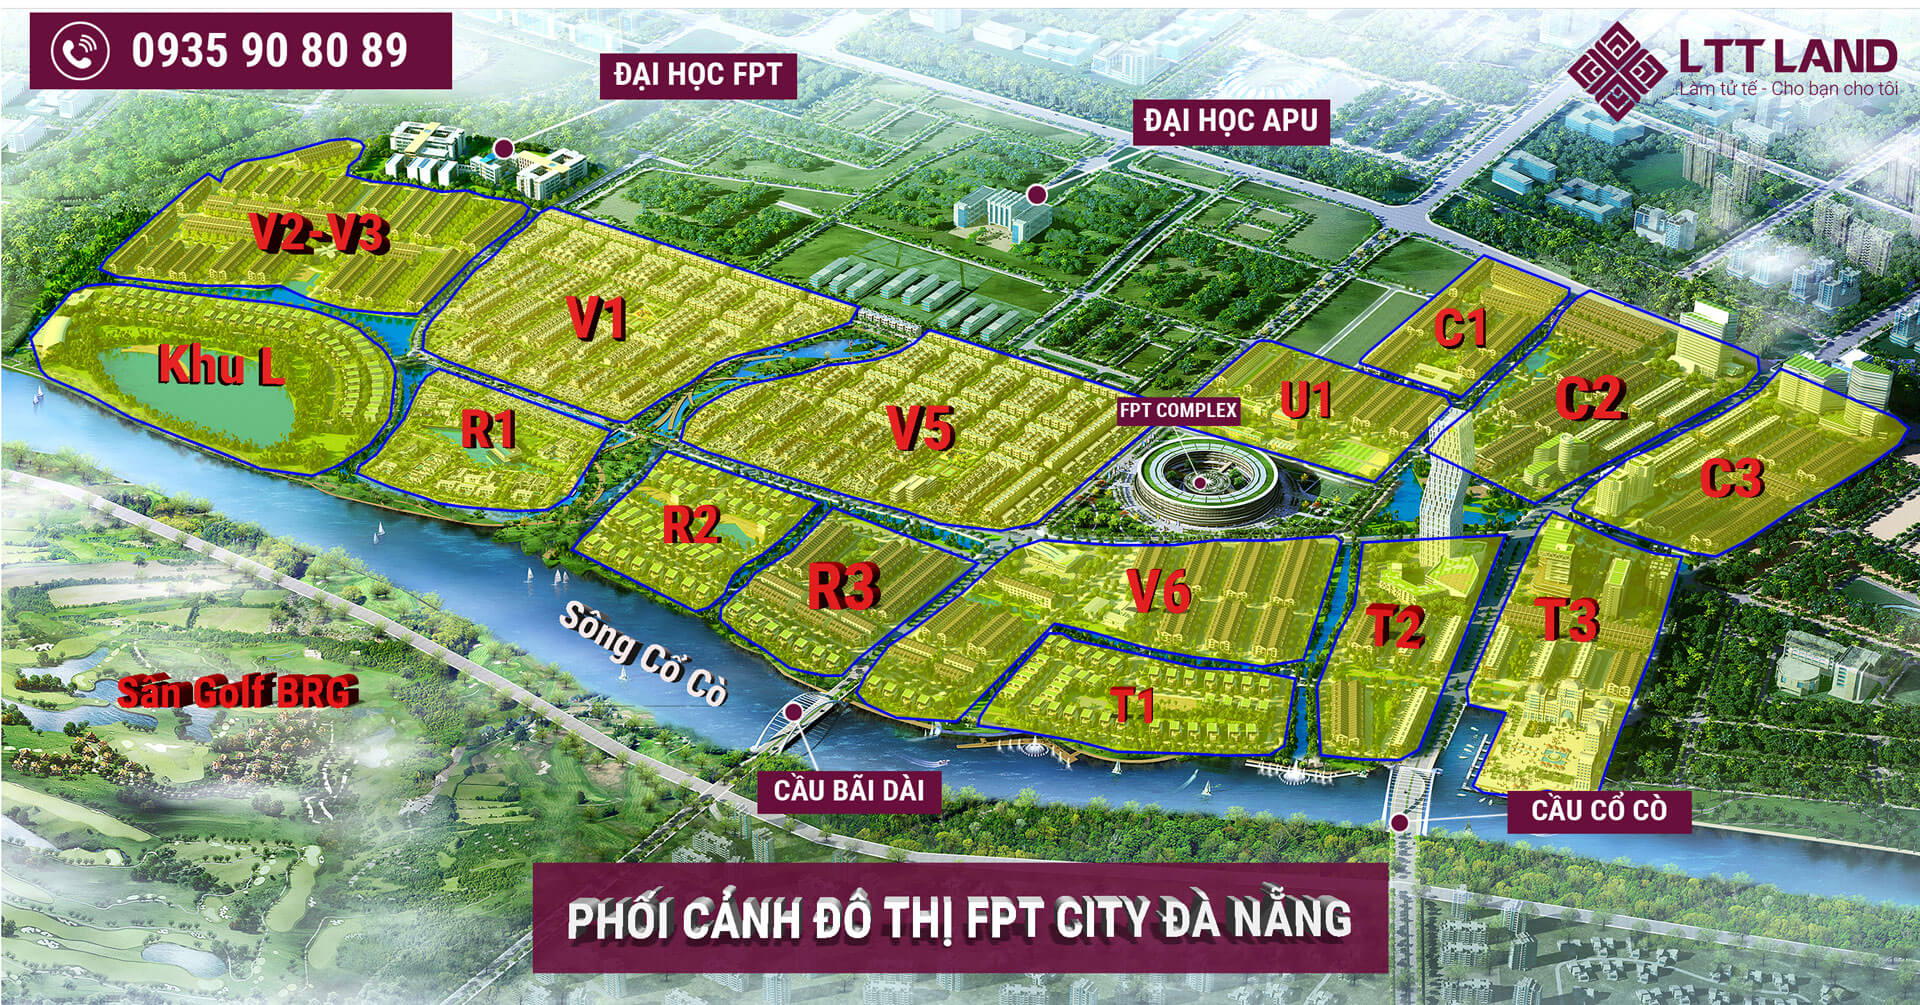 Bản đồ tổng thể đô thị FPT City Đà Nẵng 2022